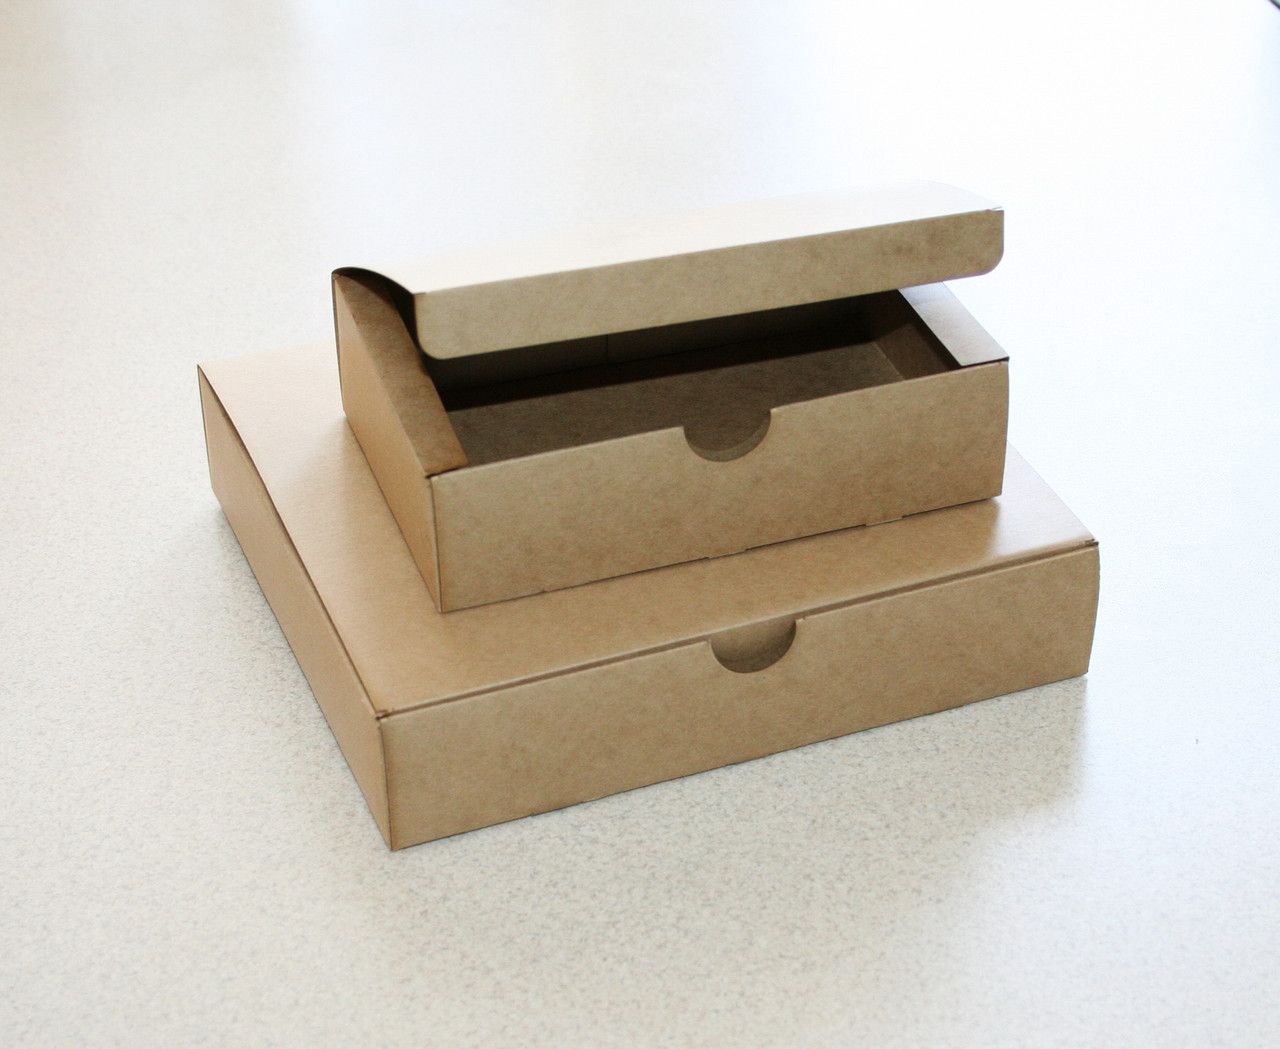 Купить упаковку в новосибирске. Упаковка коробки. Картонные коробки для белья. Постельное белье картонные коробки. Упаковка из картона для постельного белья.